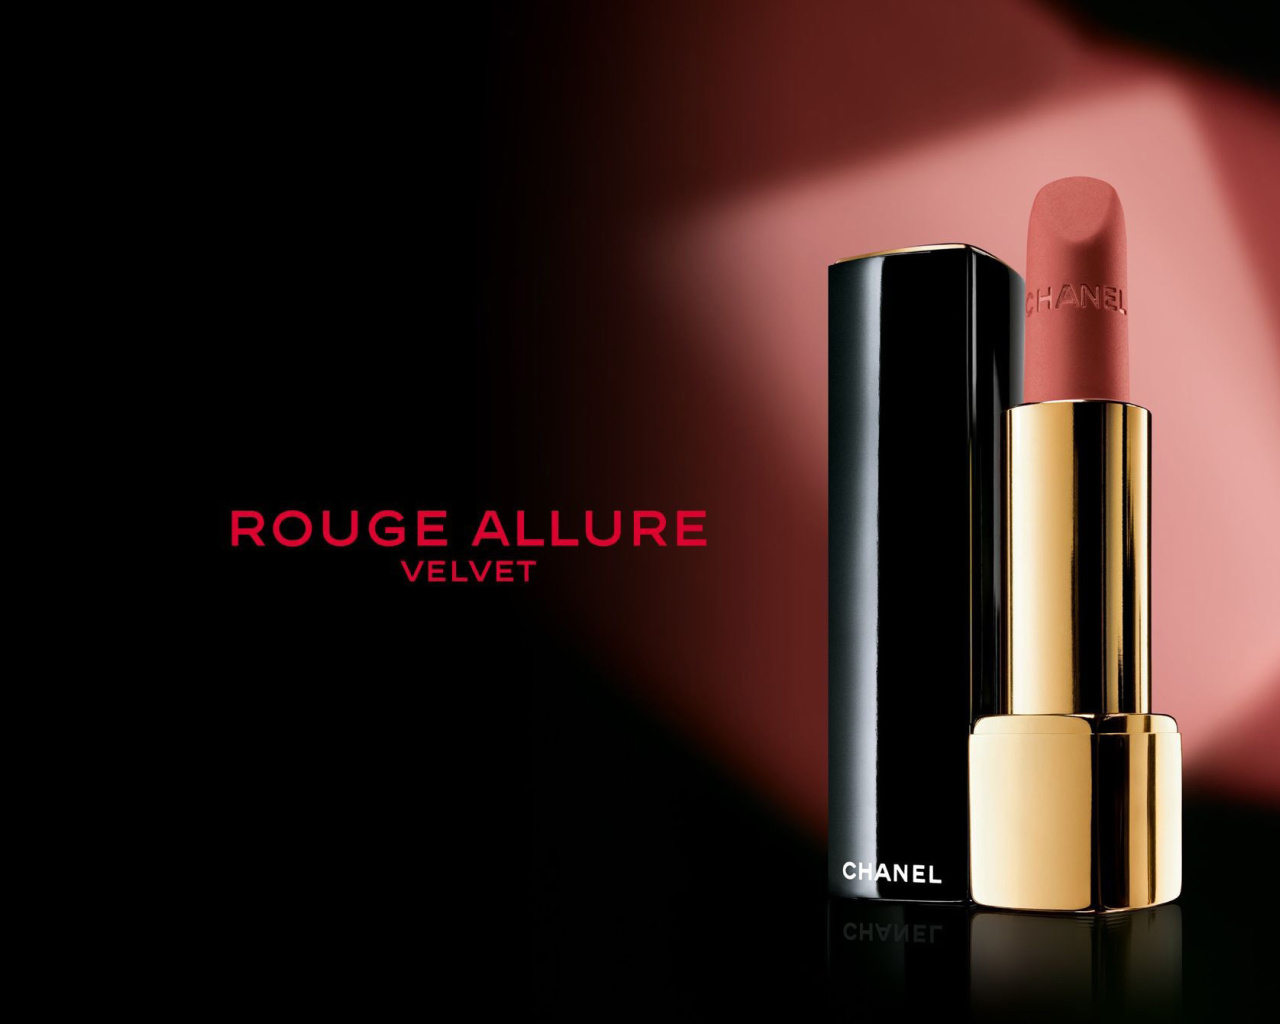 Das Chanel Rouge Allure Velvet Wallpaper 1280x1024